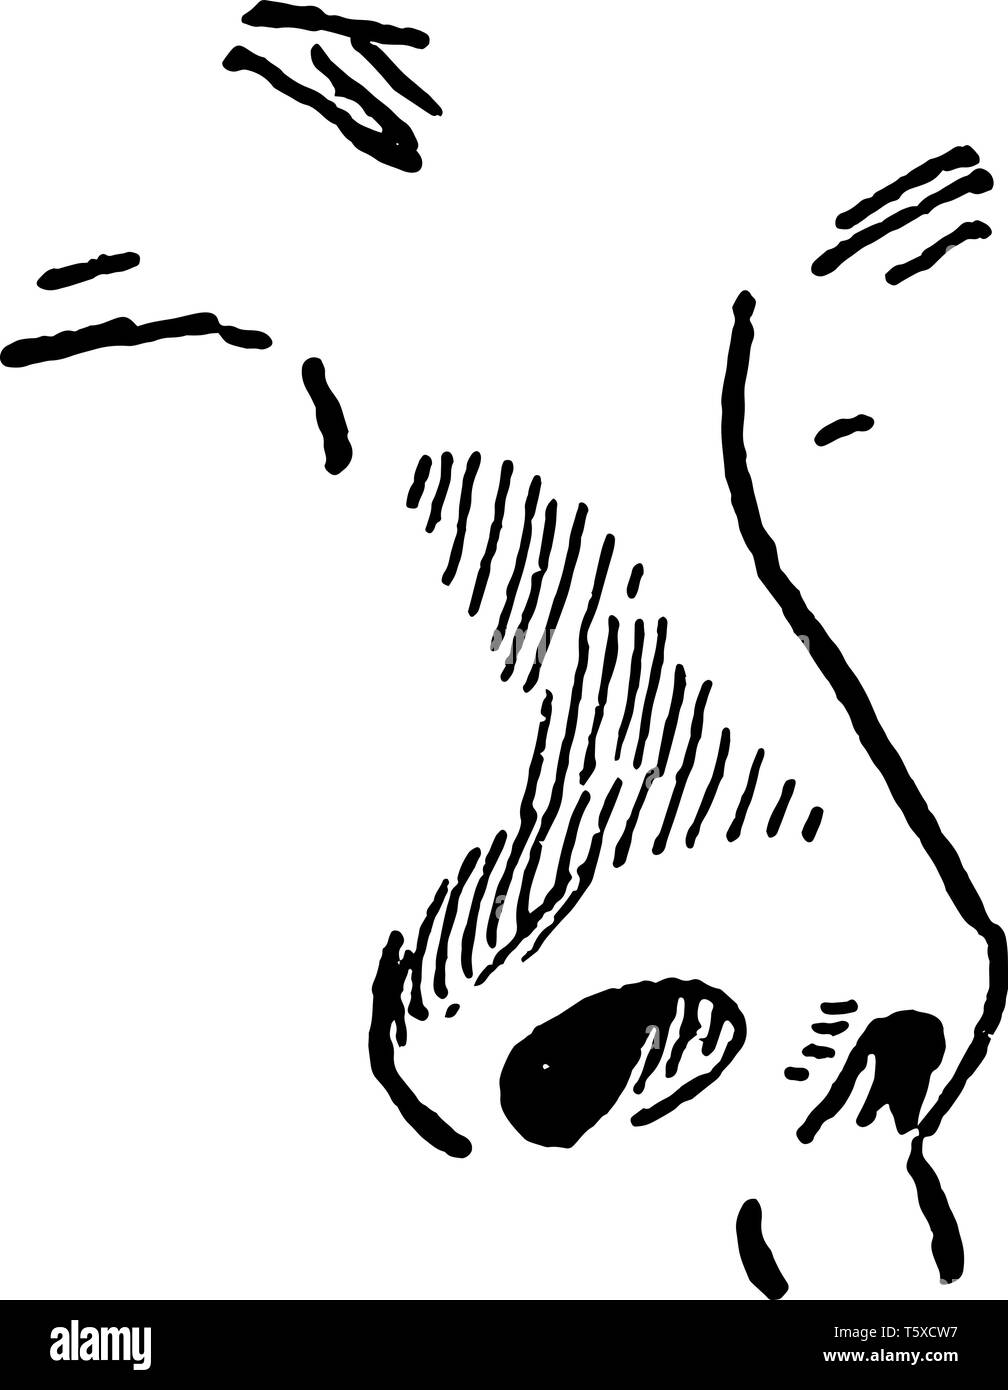 Ein Beispiel für eine menschliche Nase, vintage Strichzeichnung oder Gravur Abbildung. Stock Vektor